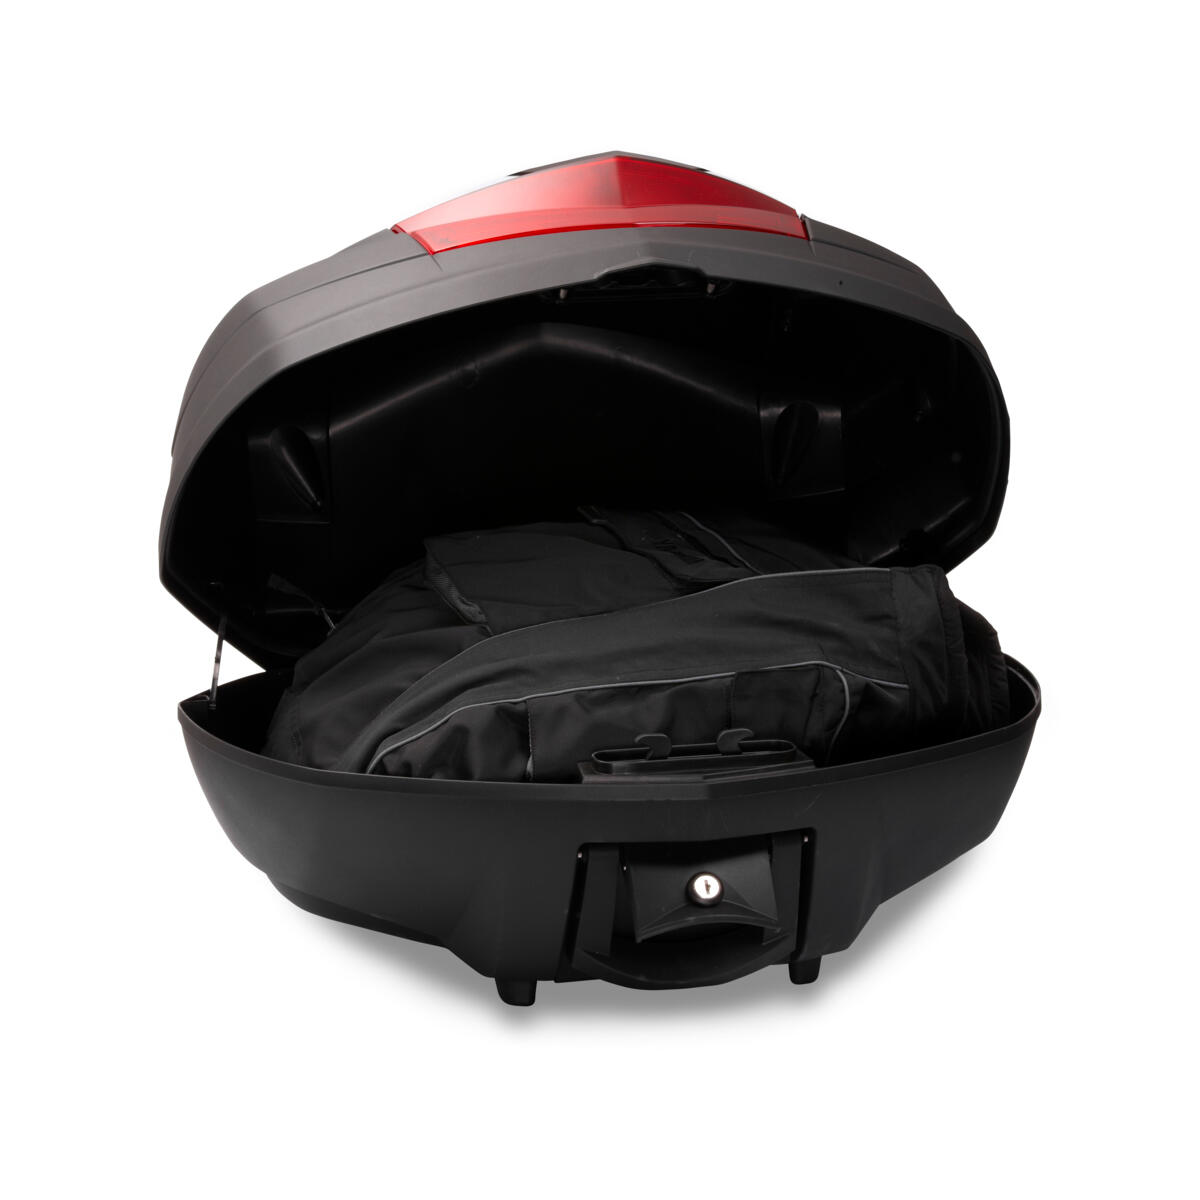 Portbagaj superior de calitate pentru capacitate suplimentară de bagaje/depozitare pe modelul dvs. Yamaha.